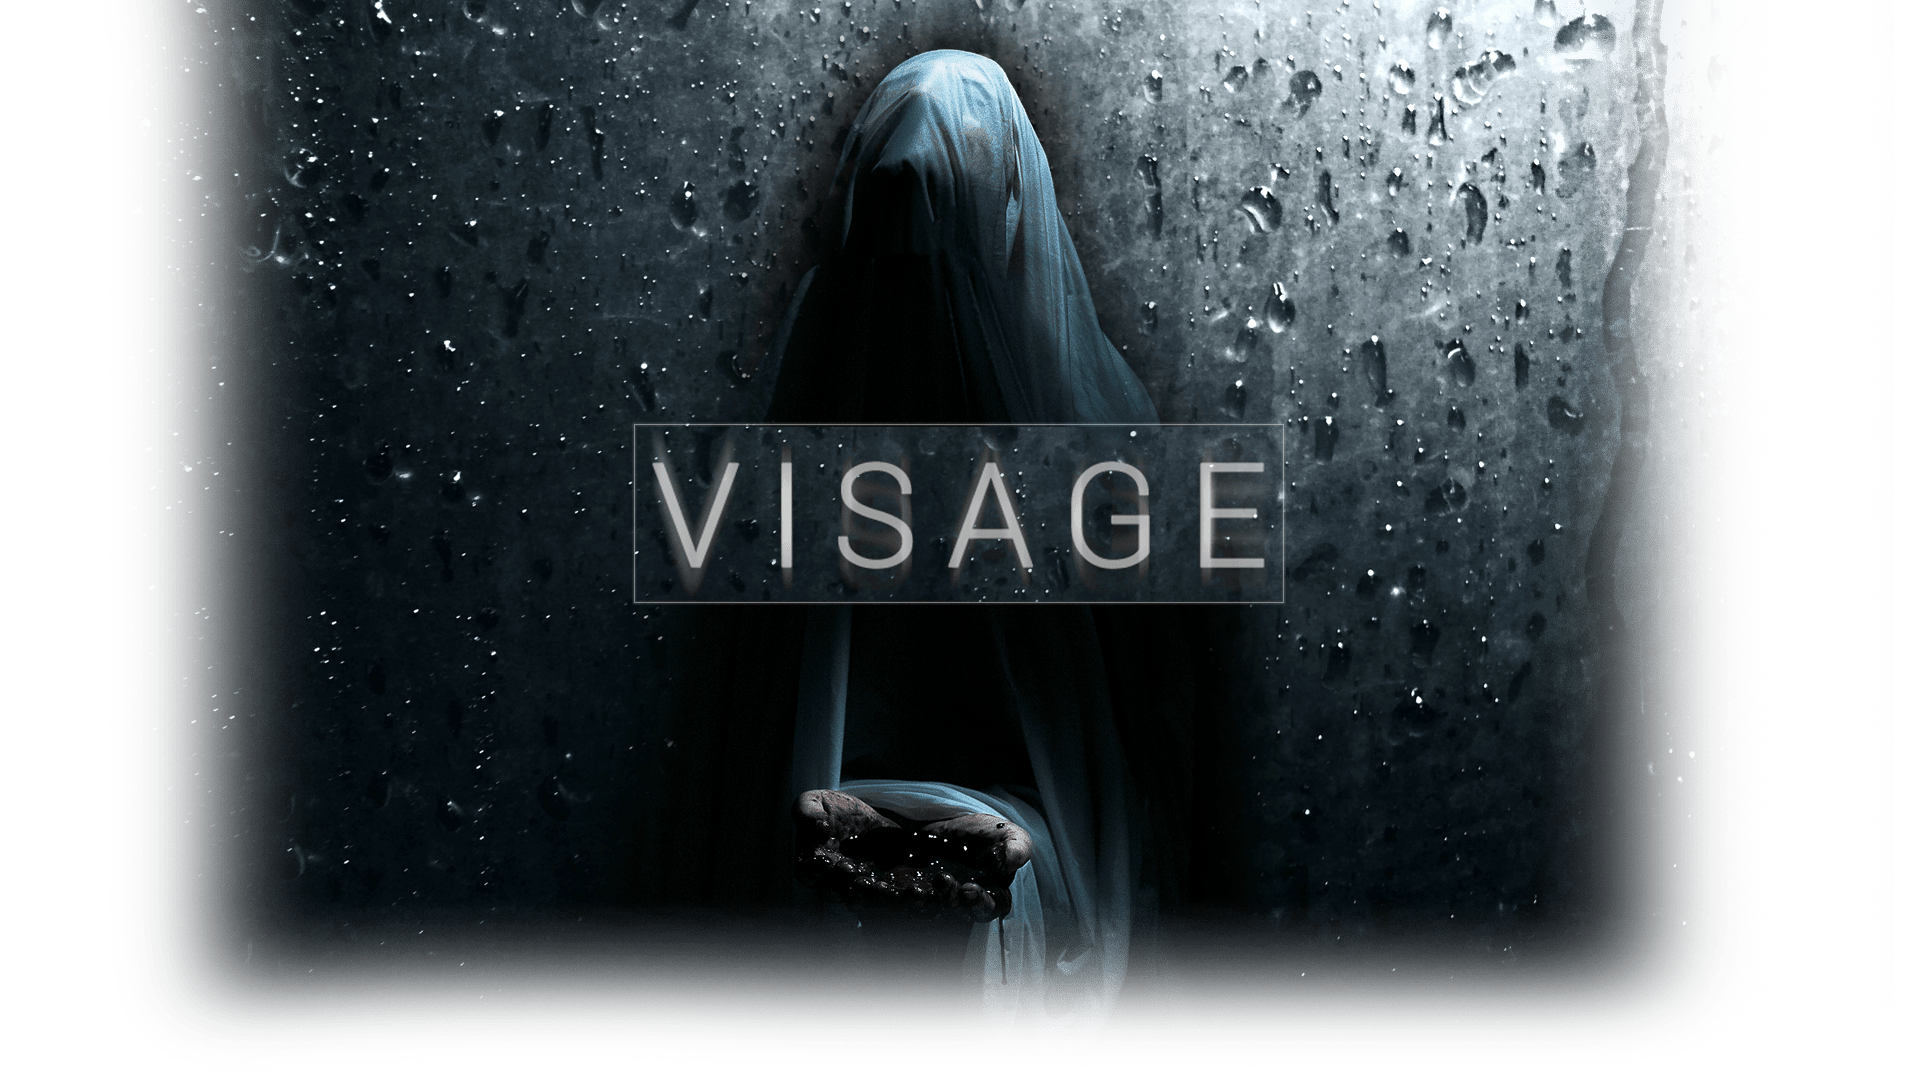 Visage - zahalená postava se vztaženýma rukama, třímající krev. Deštivé pozadí